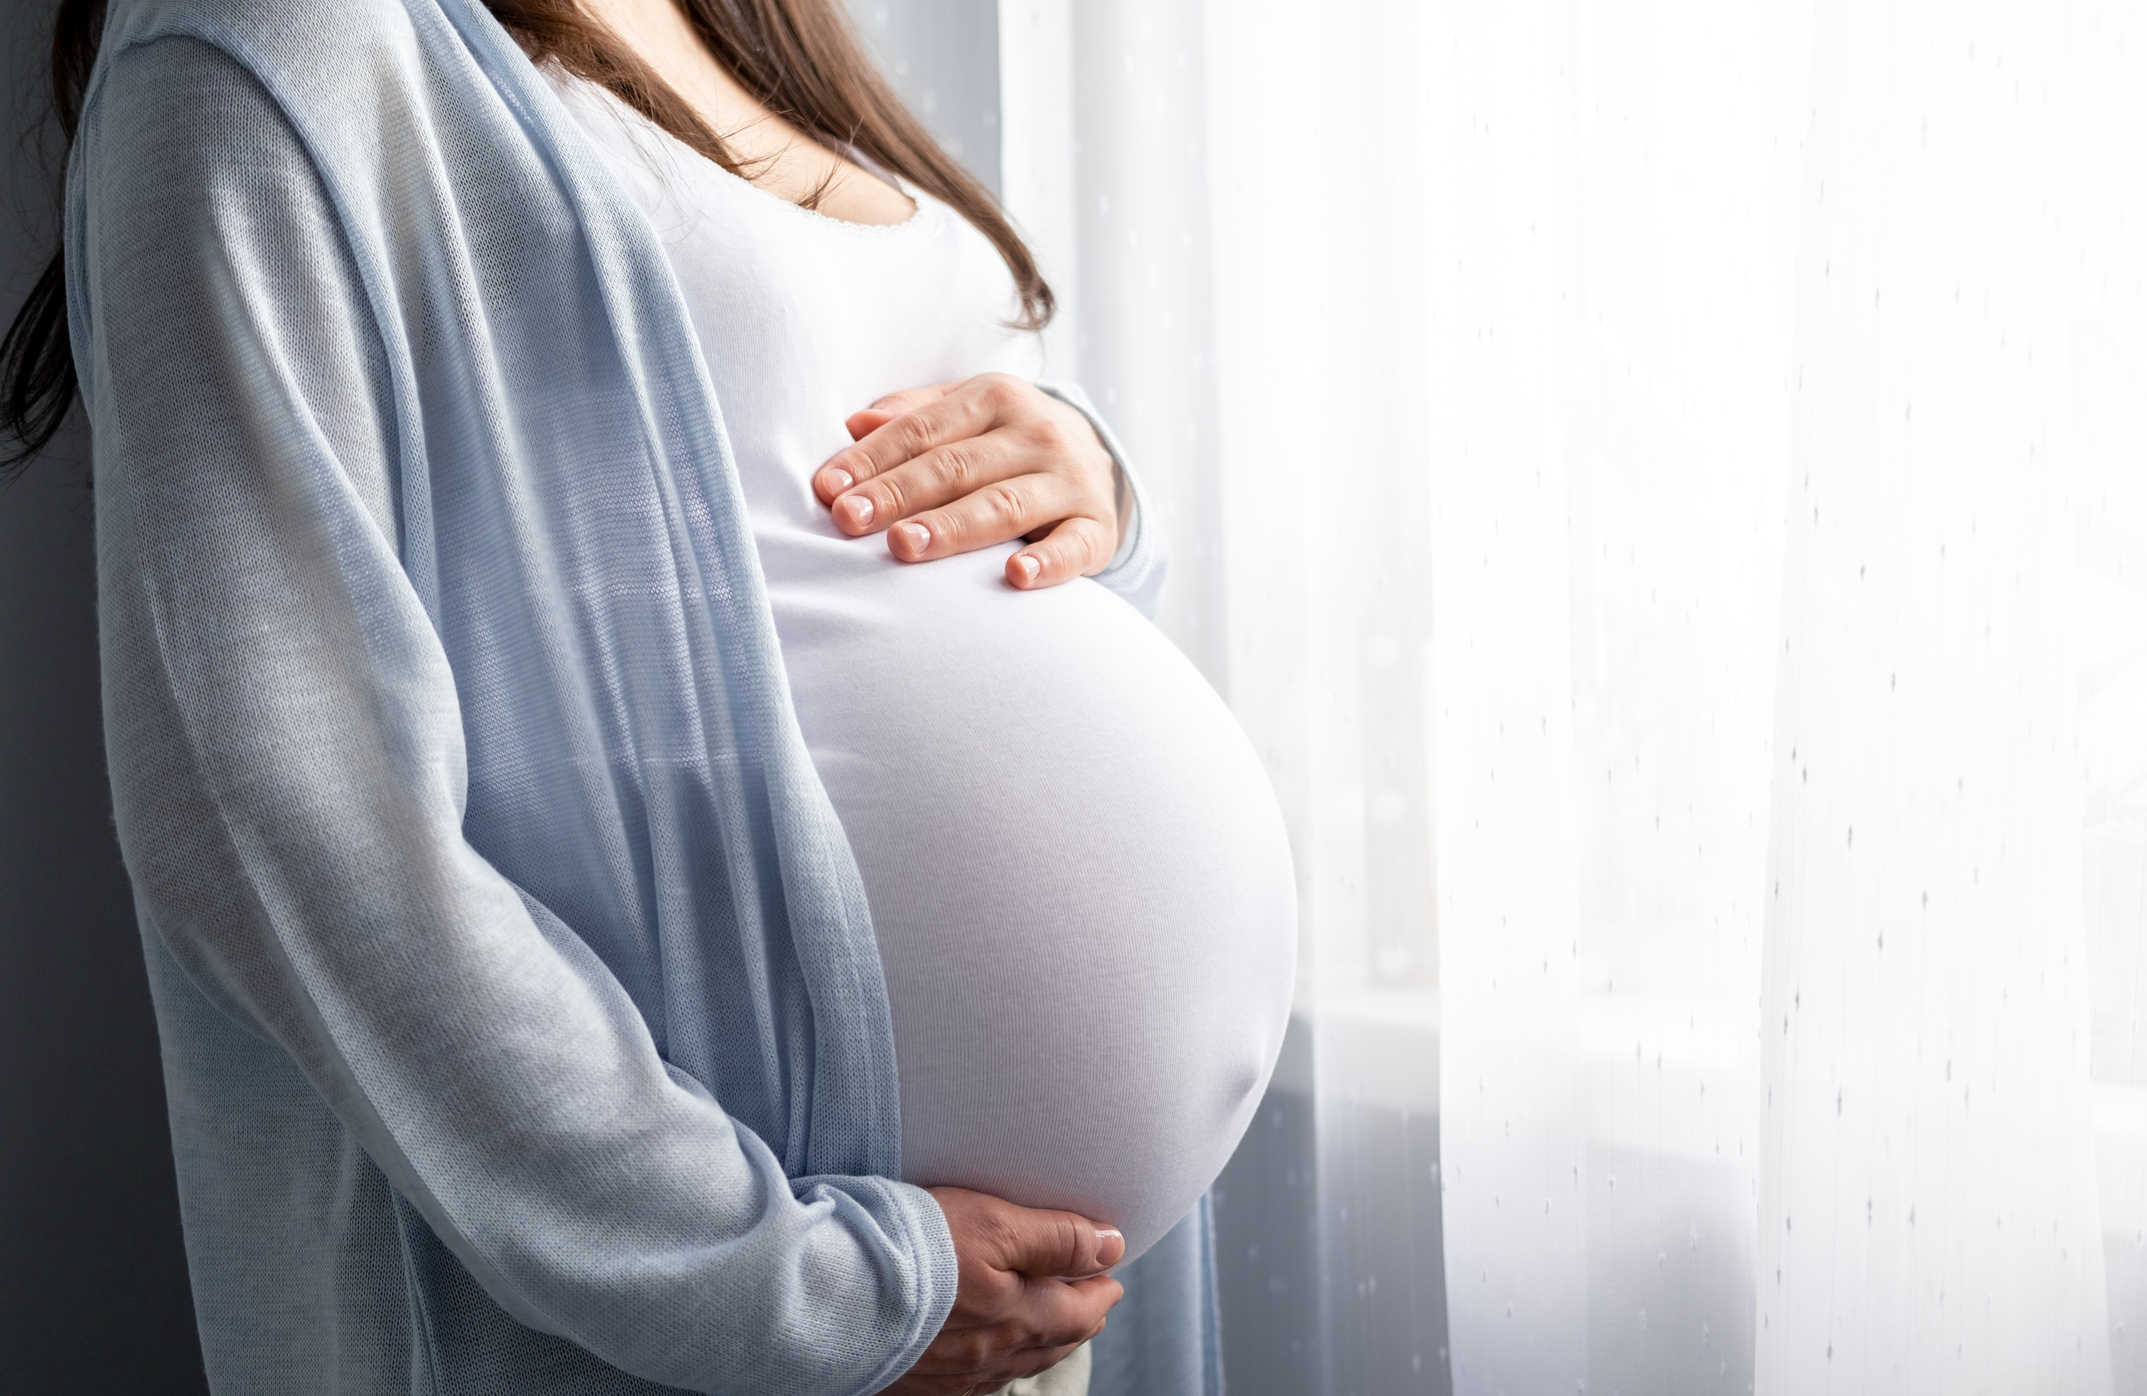 Πώς επηρεάζει η εγκυμοσύνη τα μάτια και την όραση